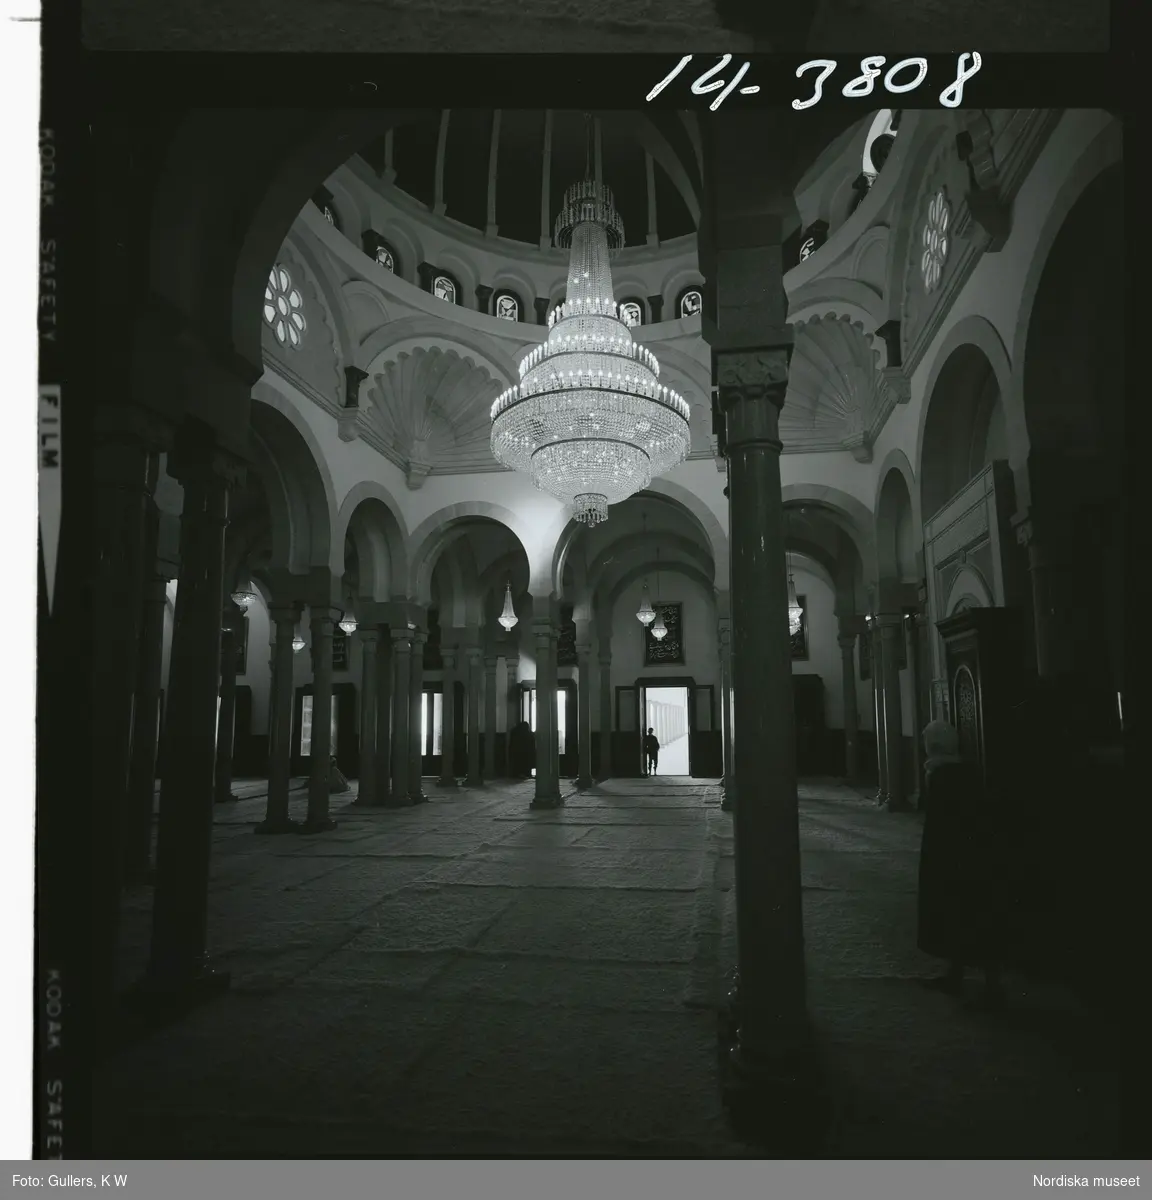 2791/1 Tunisien allmänt. Interiör i moské.